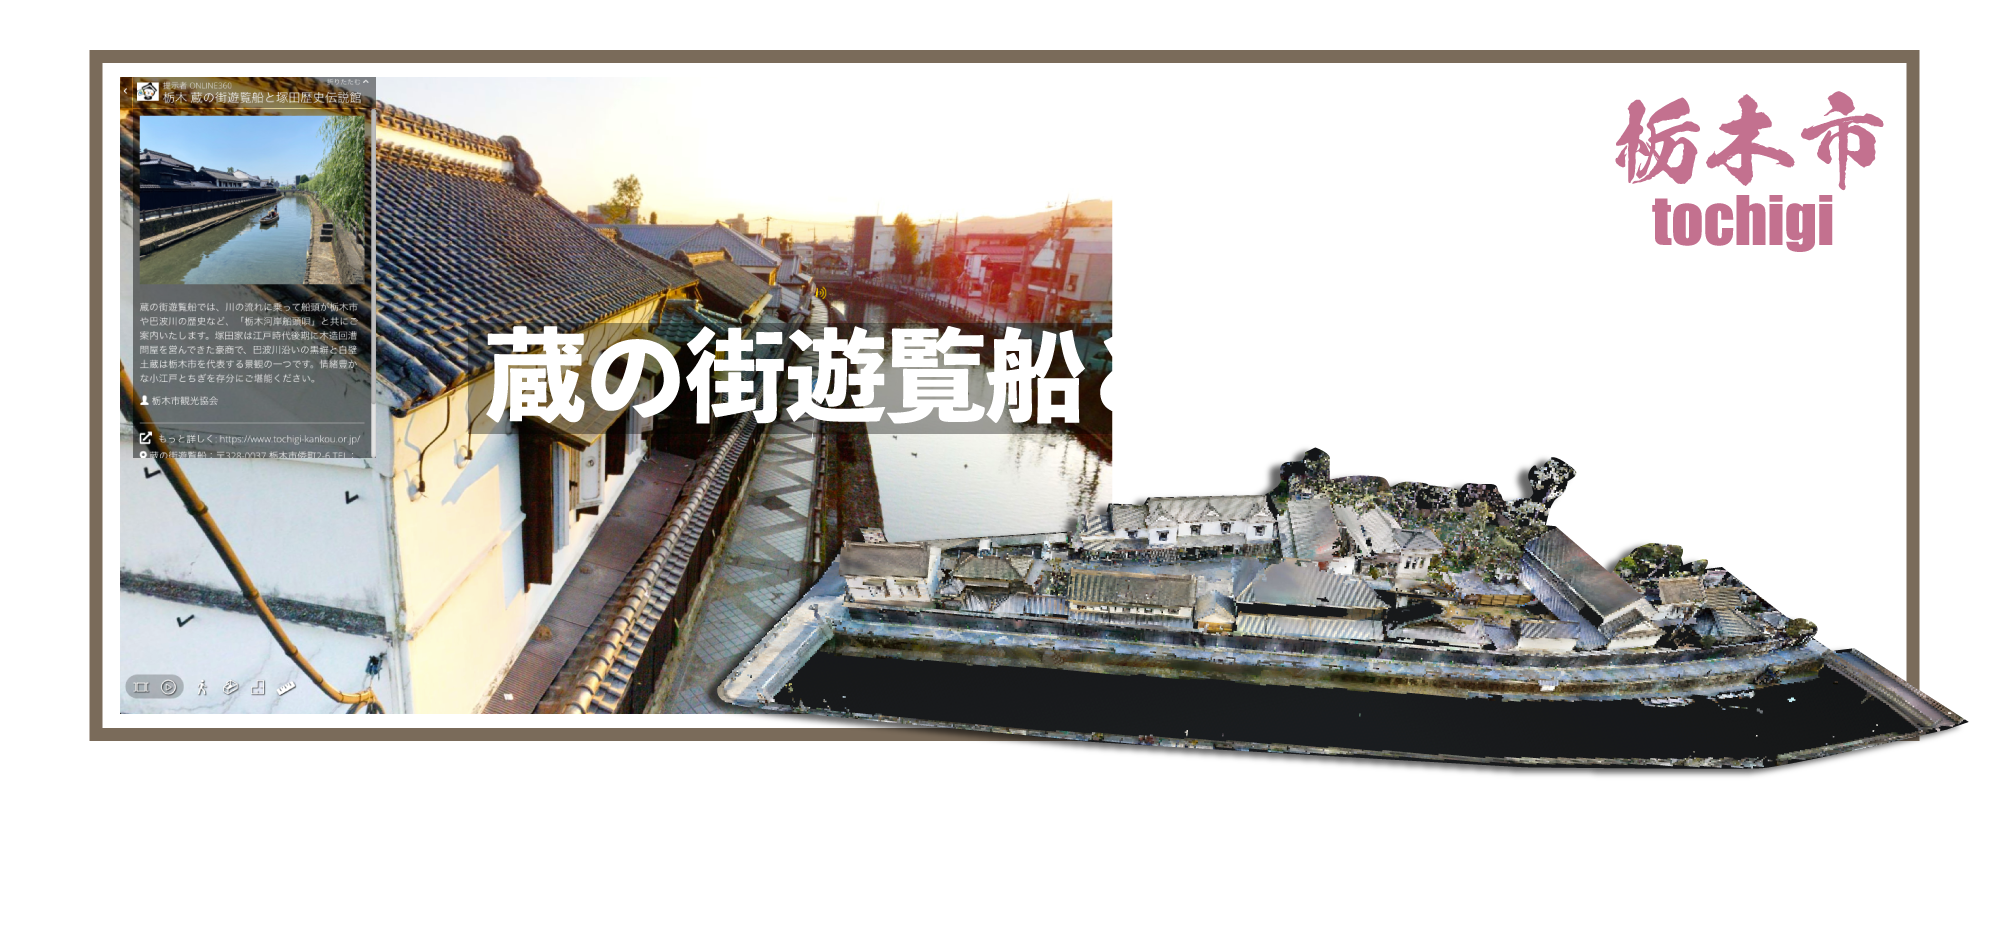 栃木蔵の街遊覧船と塚田歴史伝説館バーチャルツアー